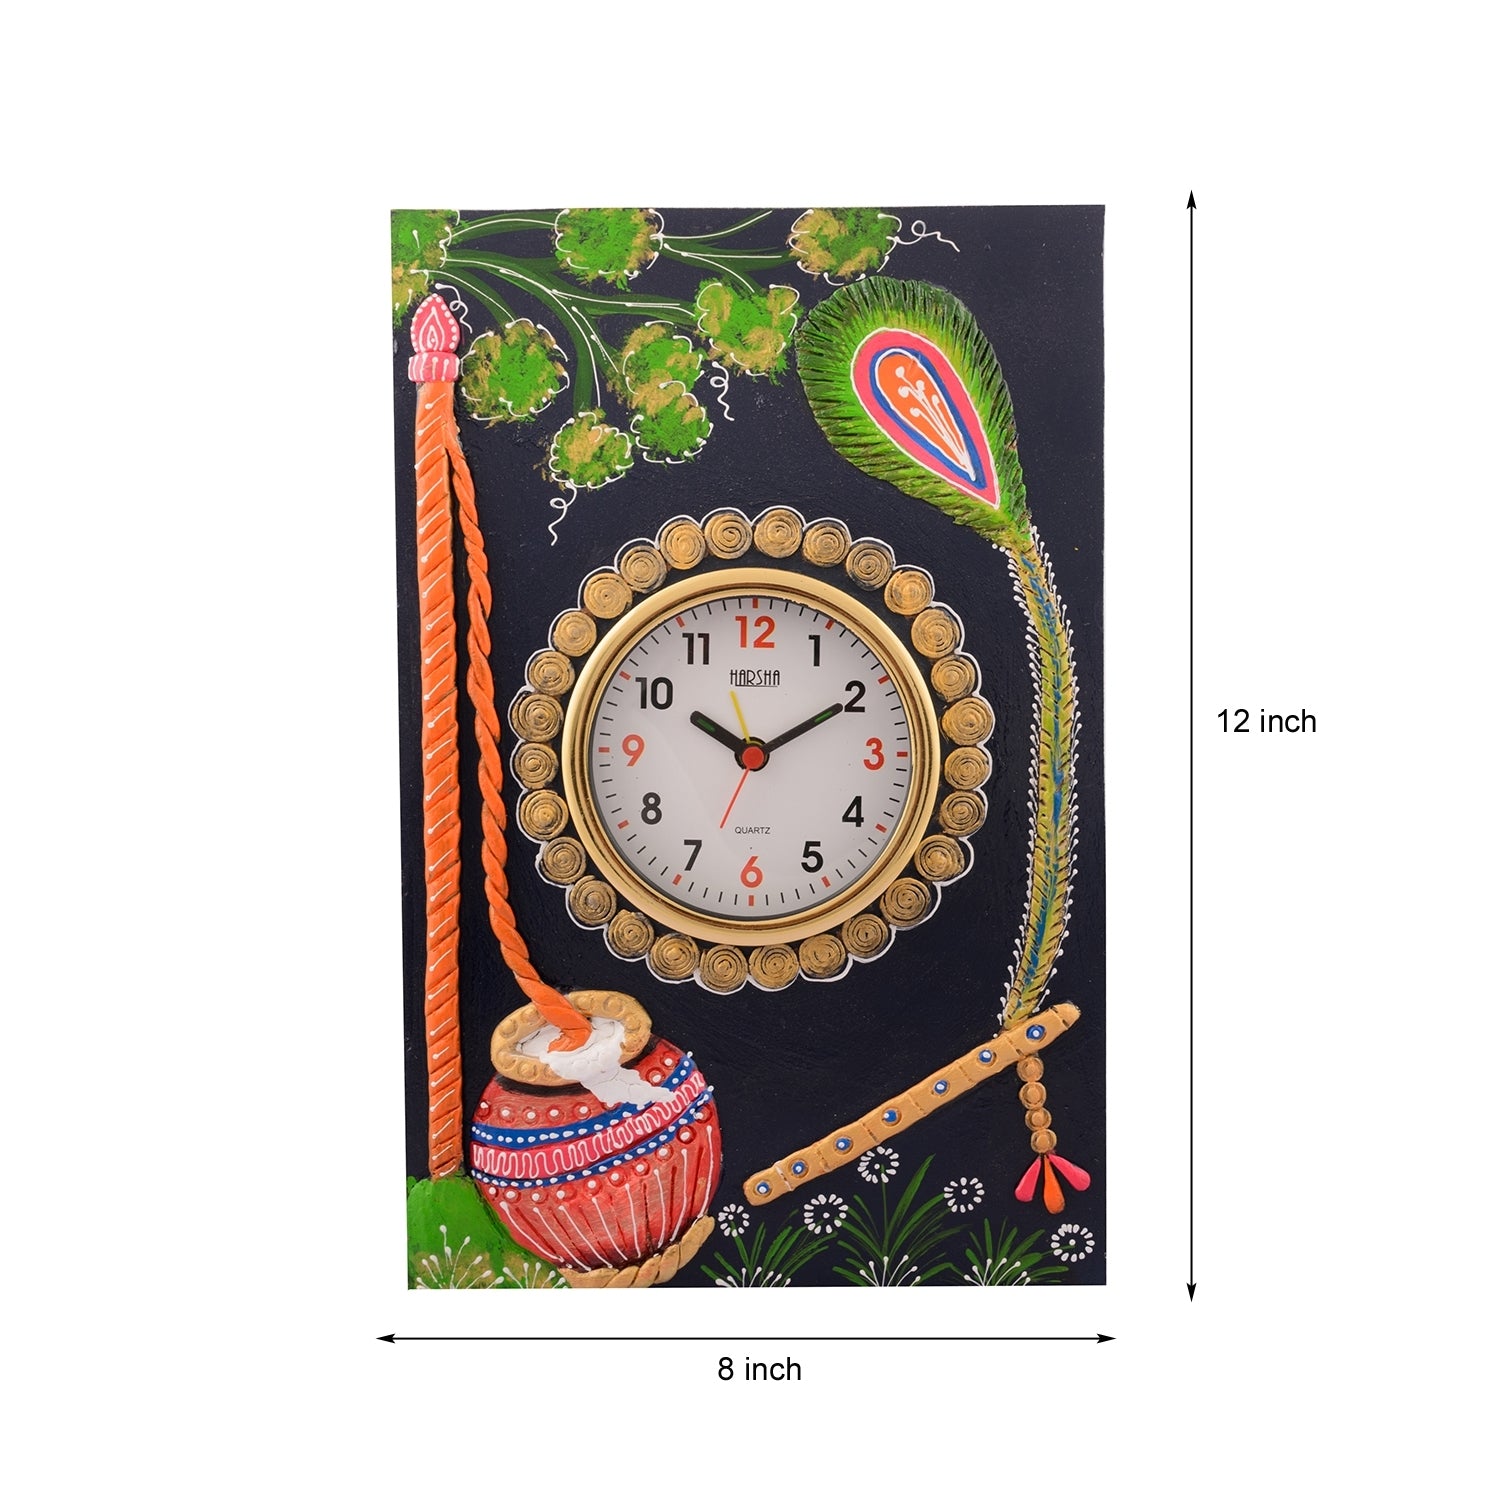 Wooden Papier Mache Matki Design Artistic Handcrafted Wall Clock 2